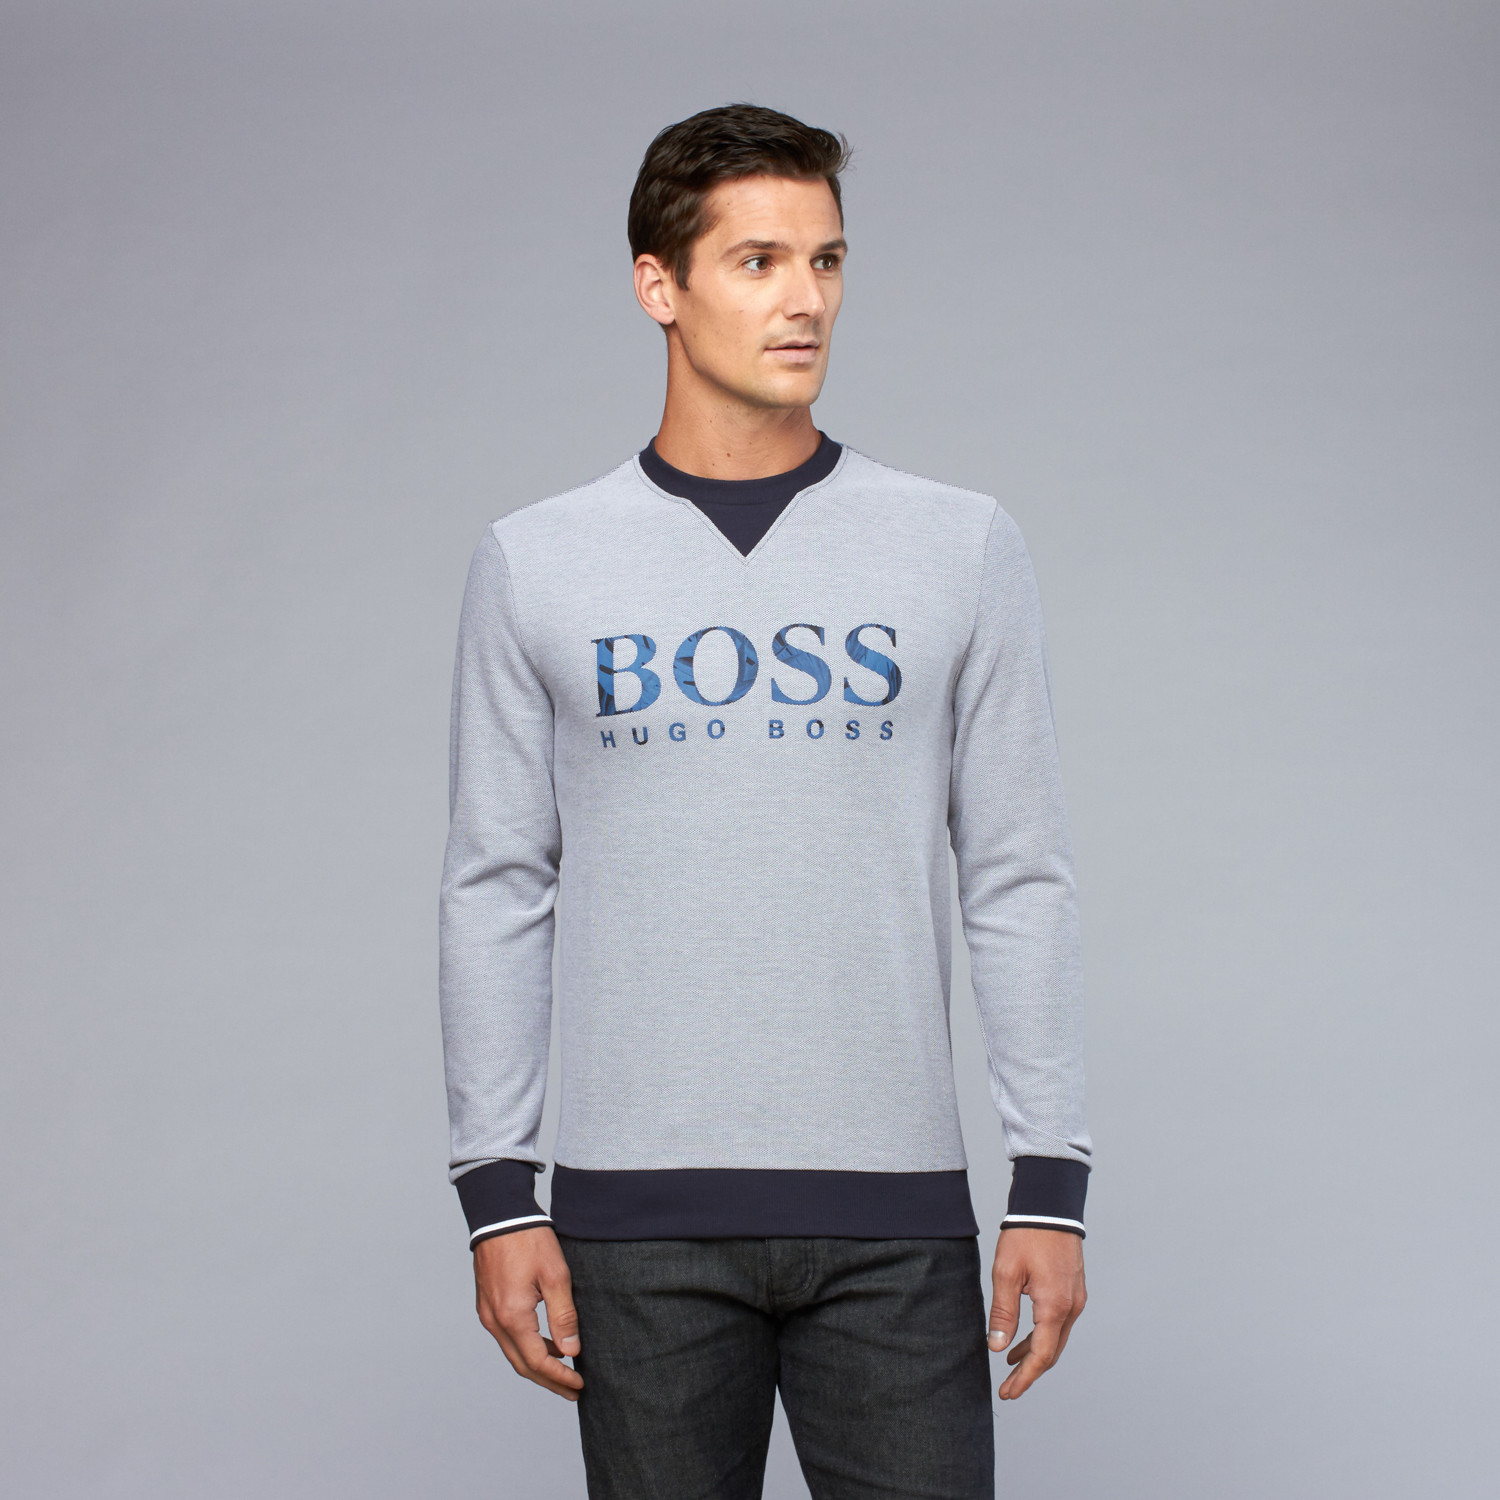 Hugo Boss // Salbo Sweater // Navy + Cream (S) - Designer Basics For ...